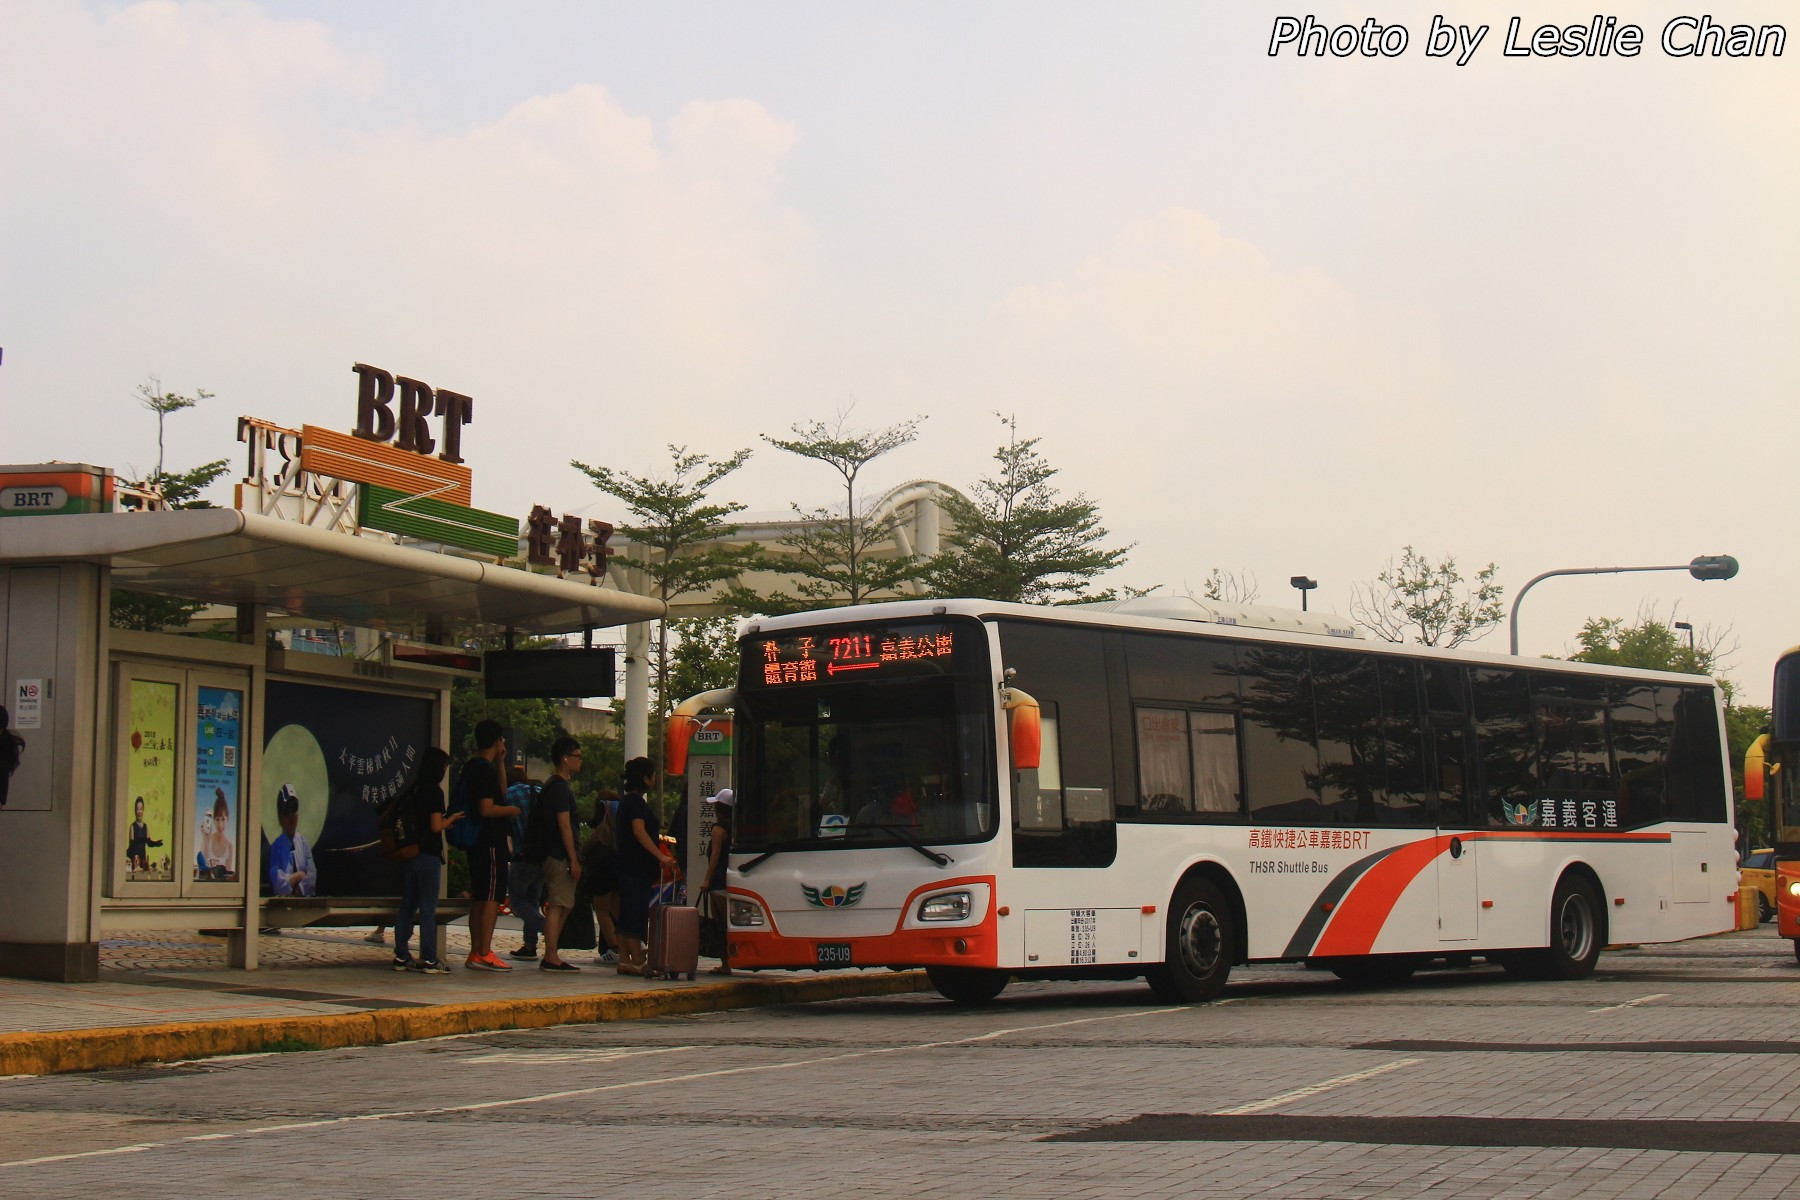 嘉義BRT最新車輛: HINO HS8JRVL-UTF - 兩岸三地巴士 (B4) - hkitalk.net 香港交通資訊網 - Powered by Discuz!